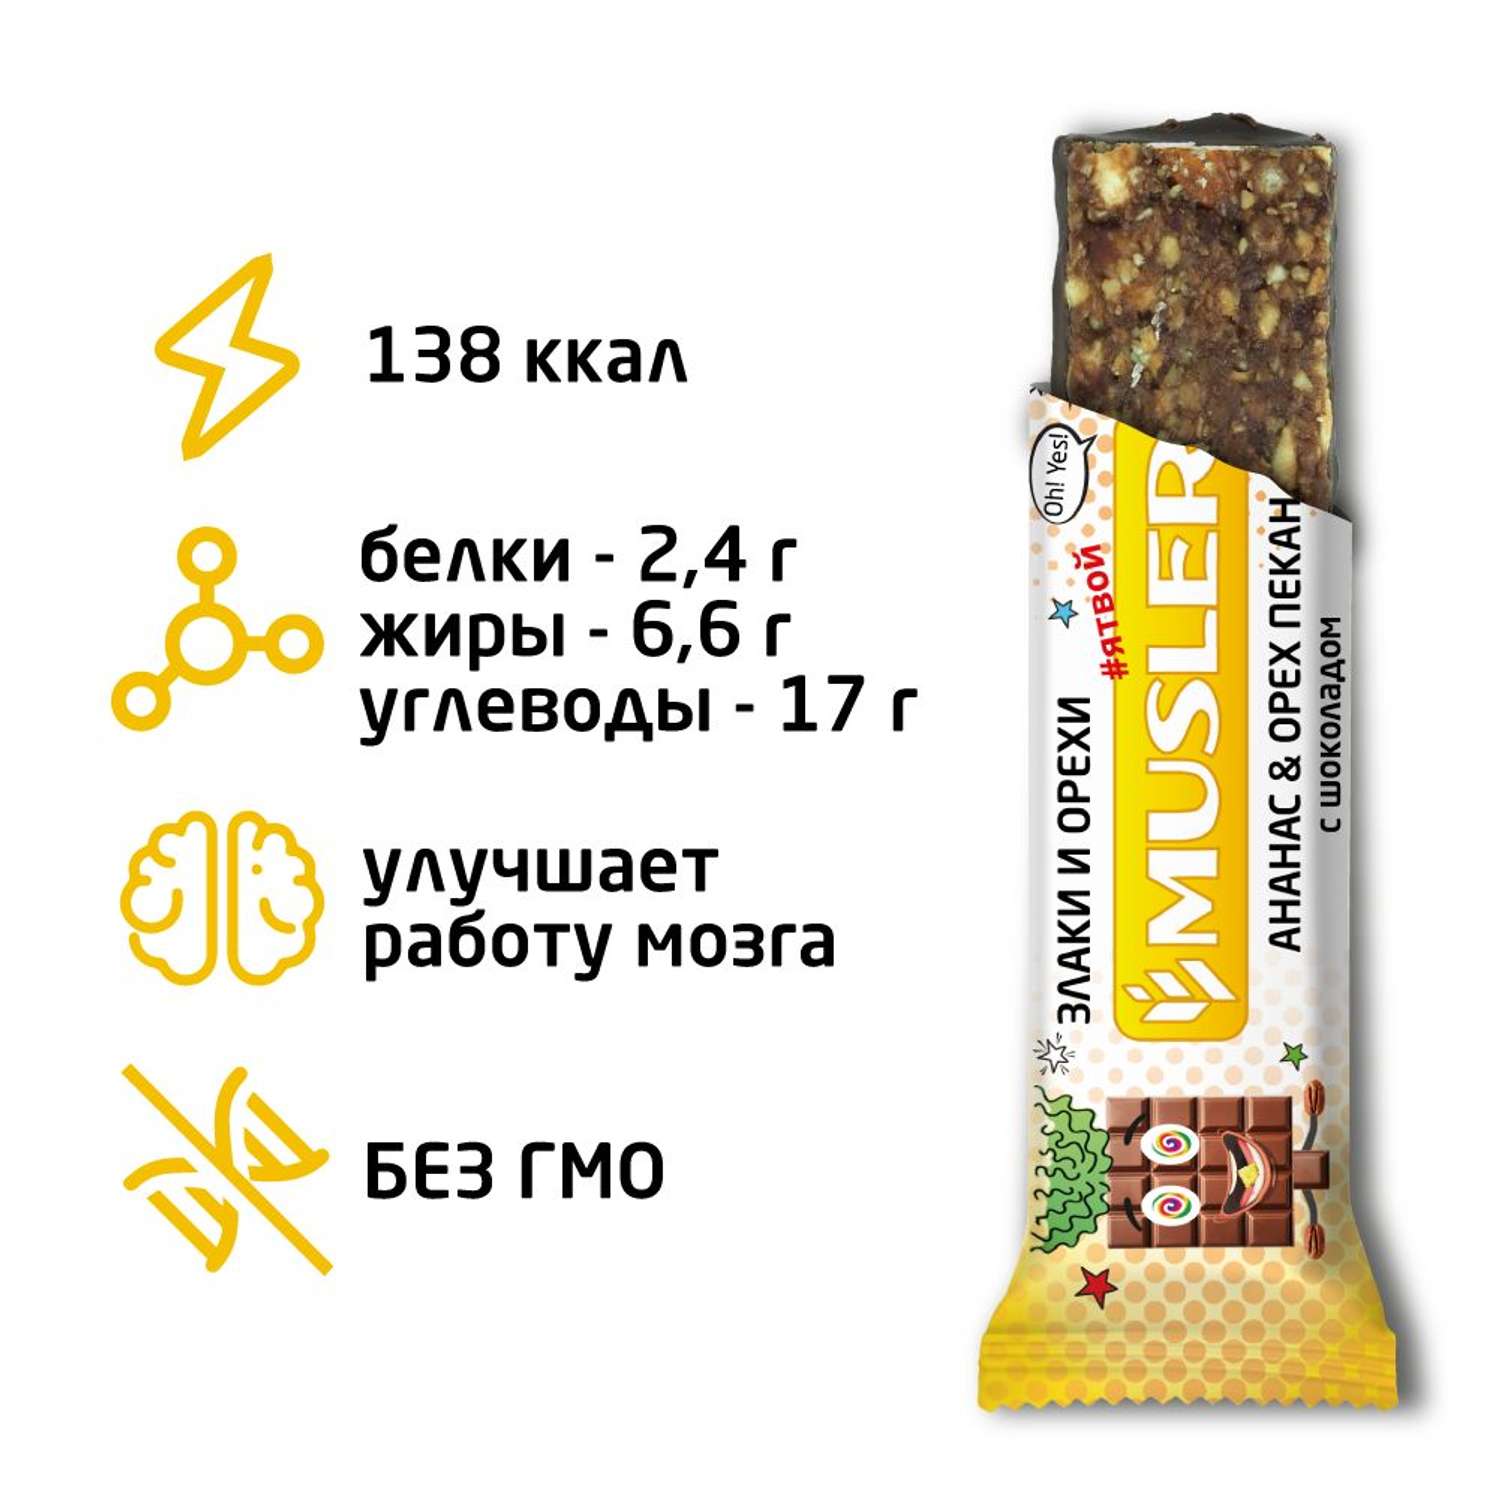 Злаковый ореховый батончик MUSLER Ананас-орех пекан с шоколадом 1 шт.х 30г - фото 1